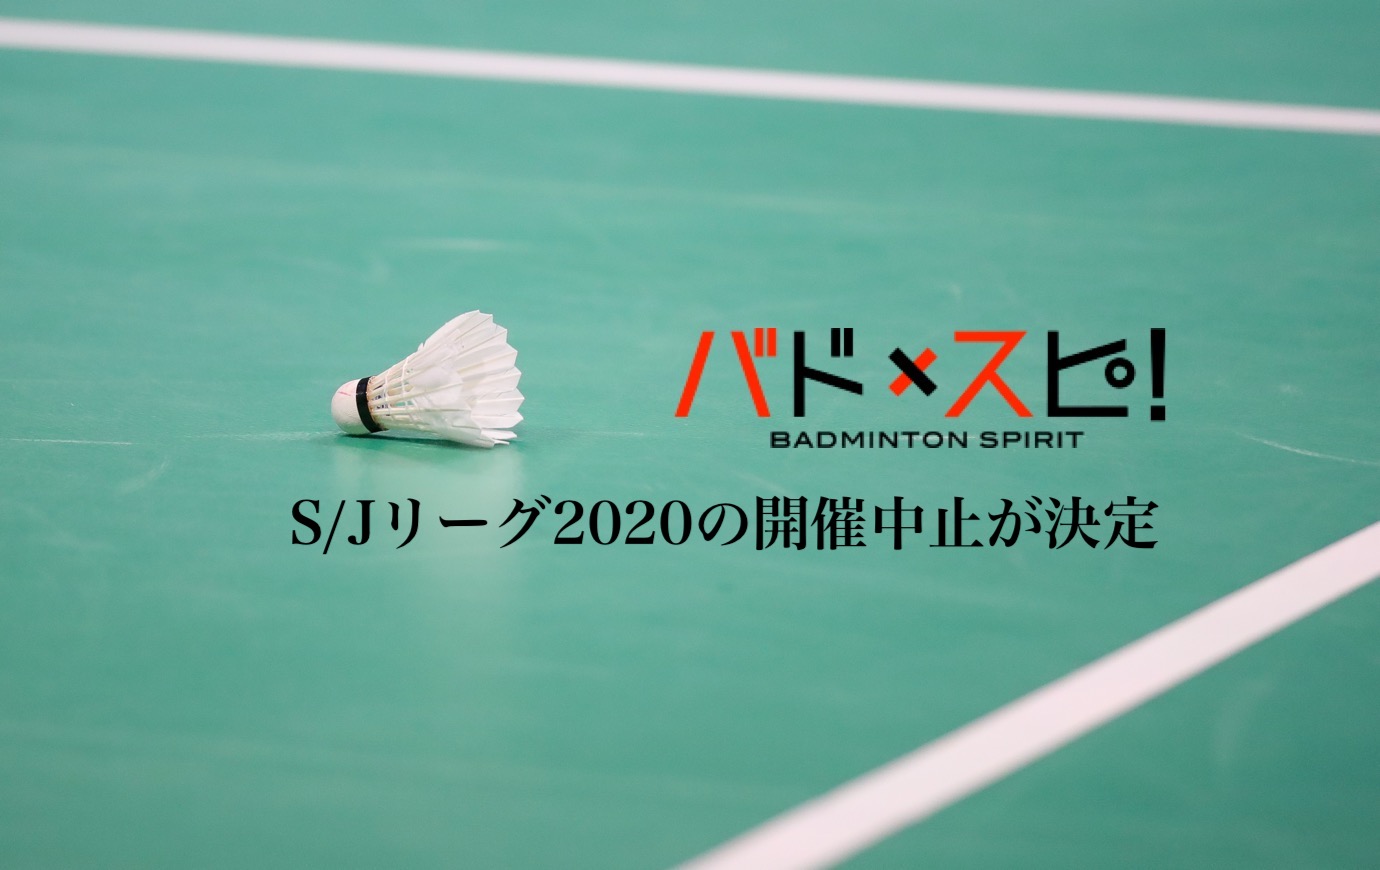 大会情報 Jtb S Jリーグの開催中止が決定 バドスピ Badminton Spirit